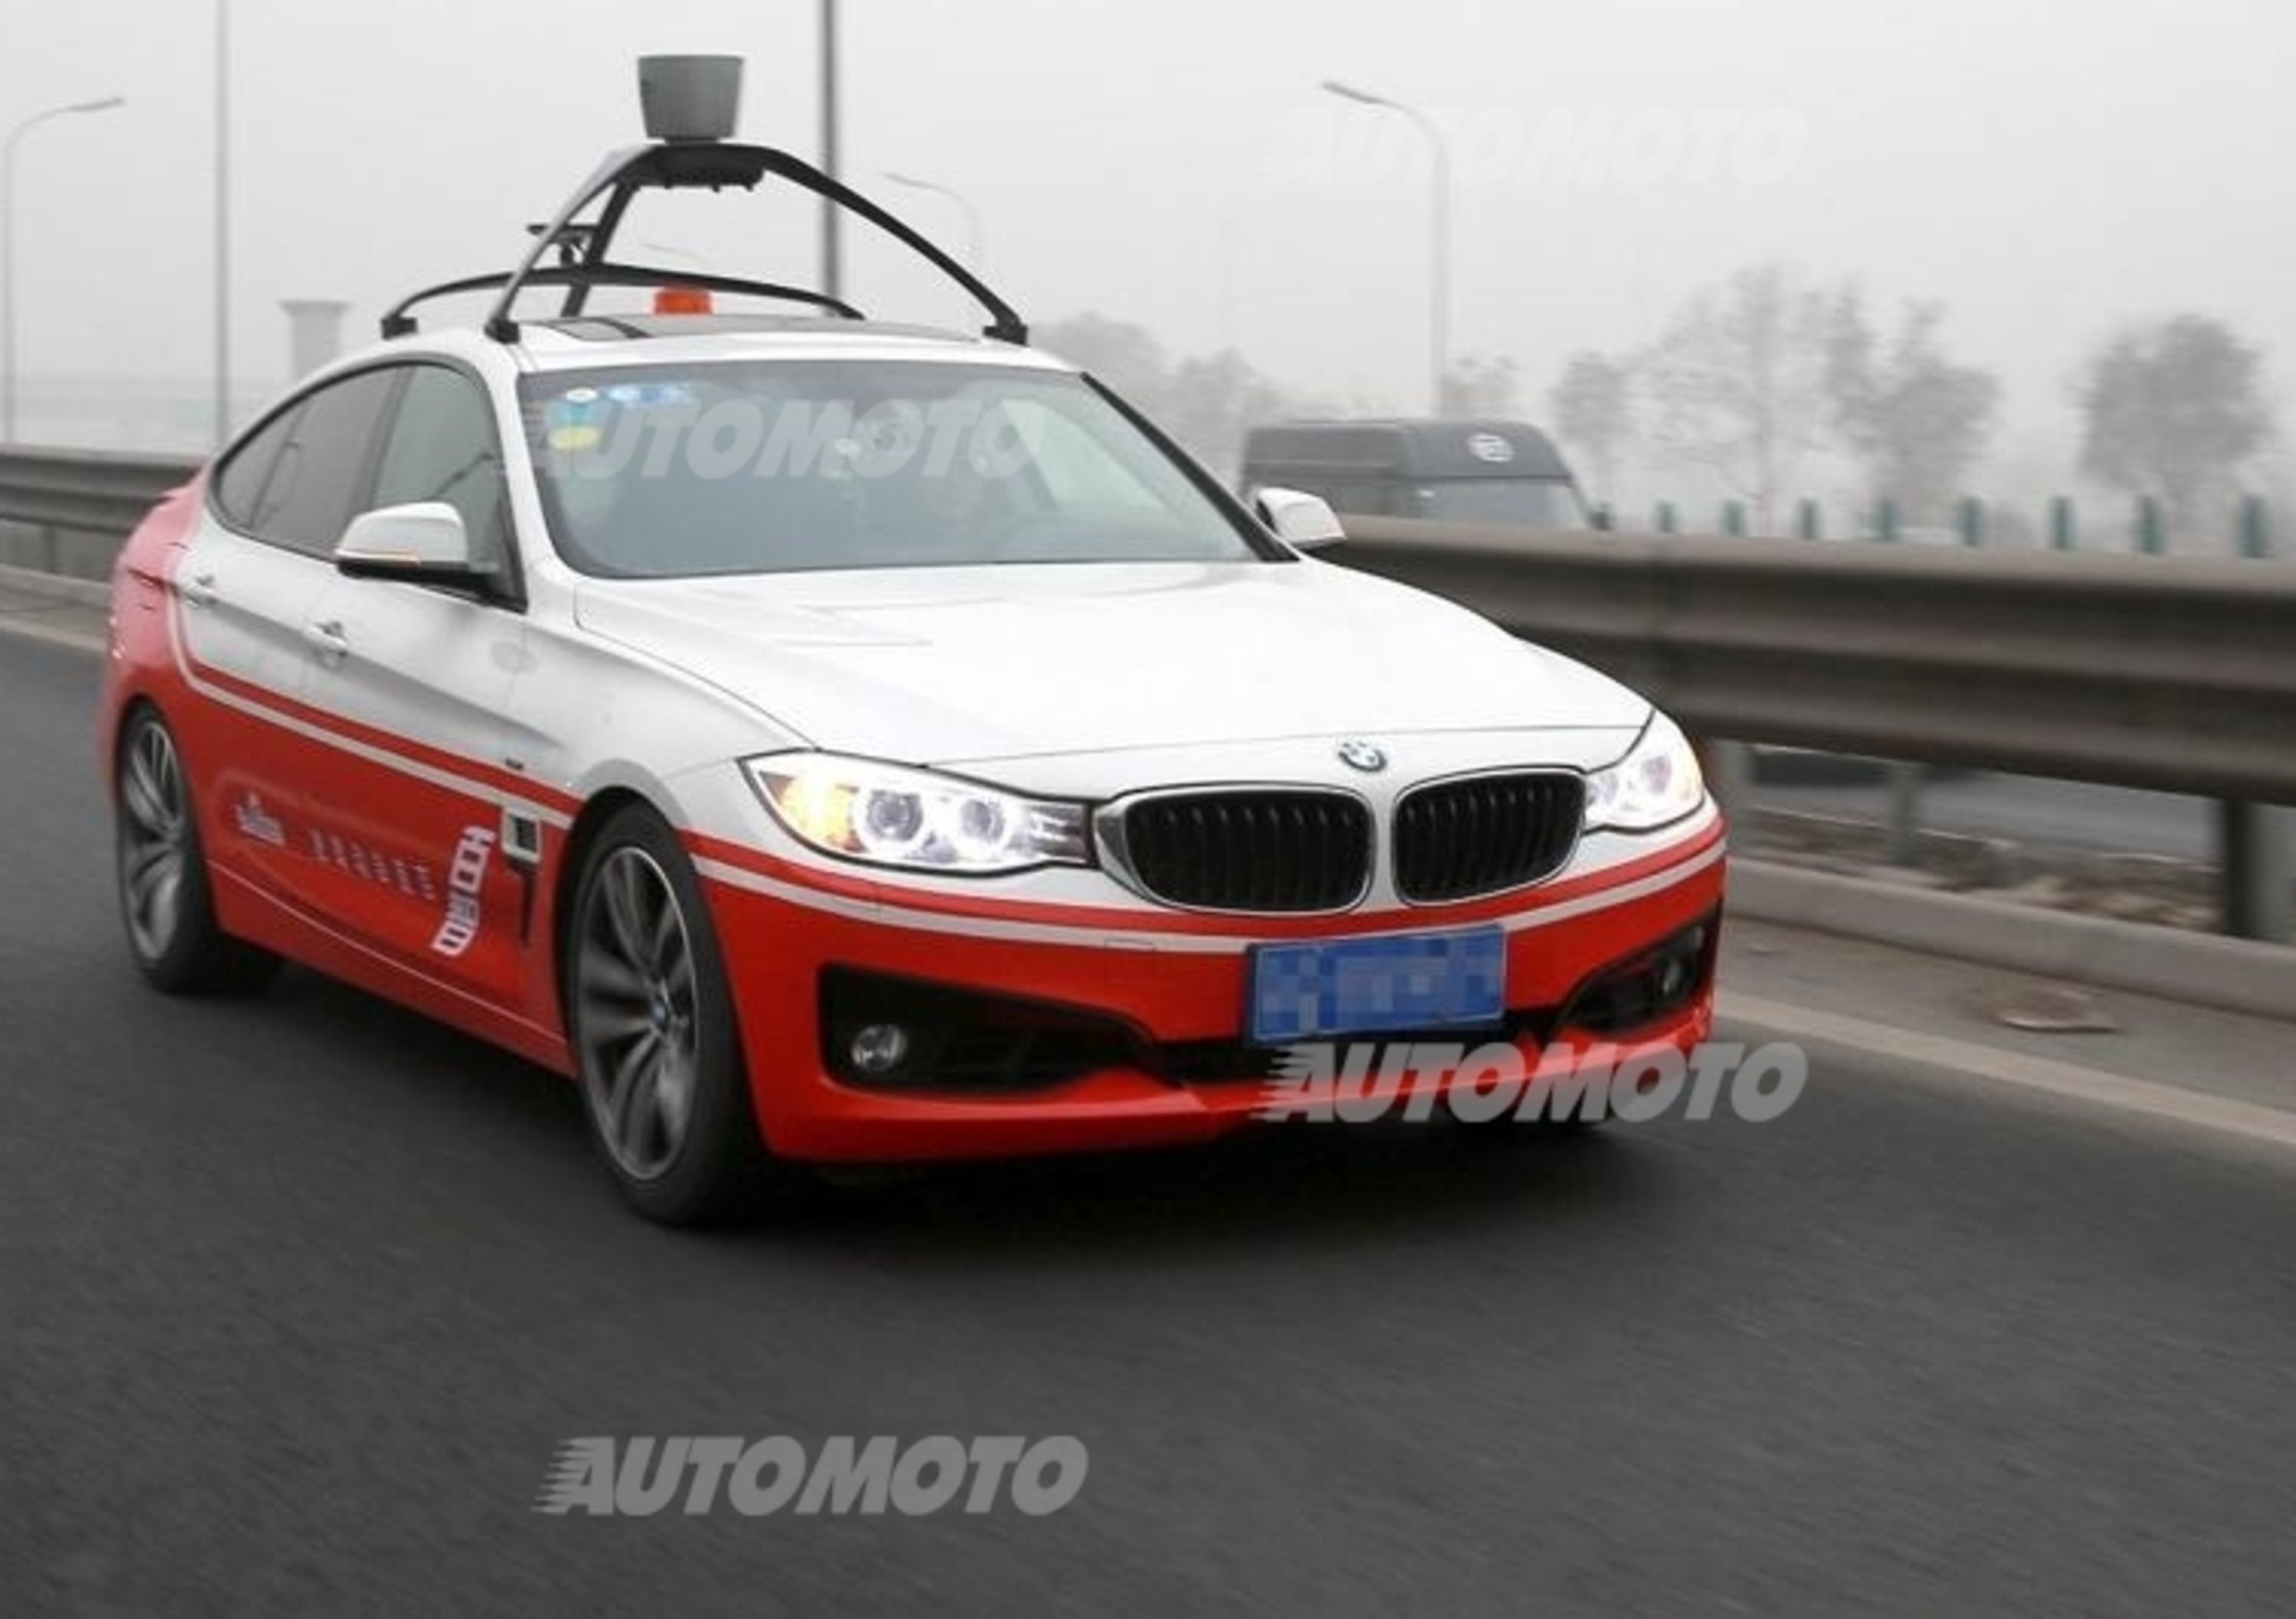 Guida autonoma: Baidu e BMW lanciano il primo prototipo